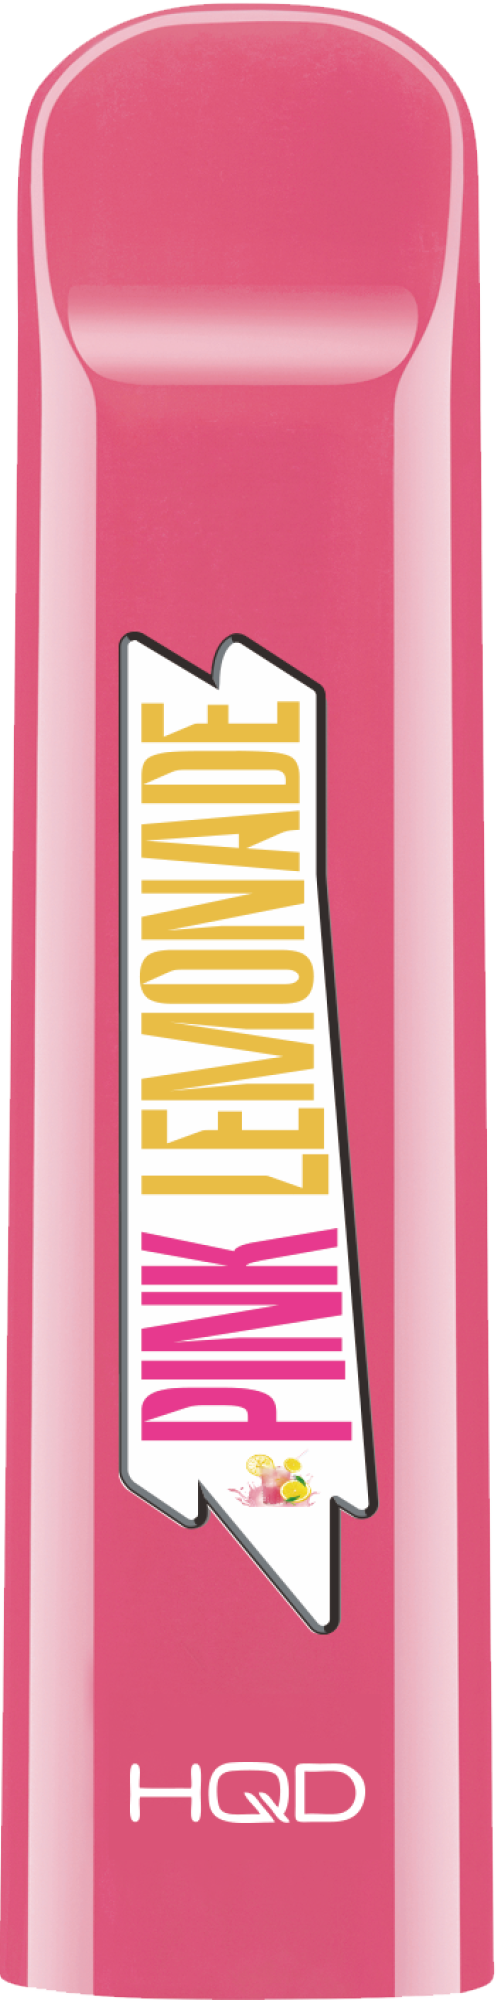 HQD Cuvie / Розовый лимонад